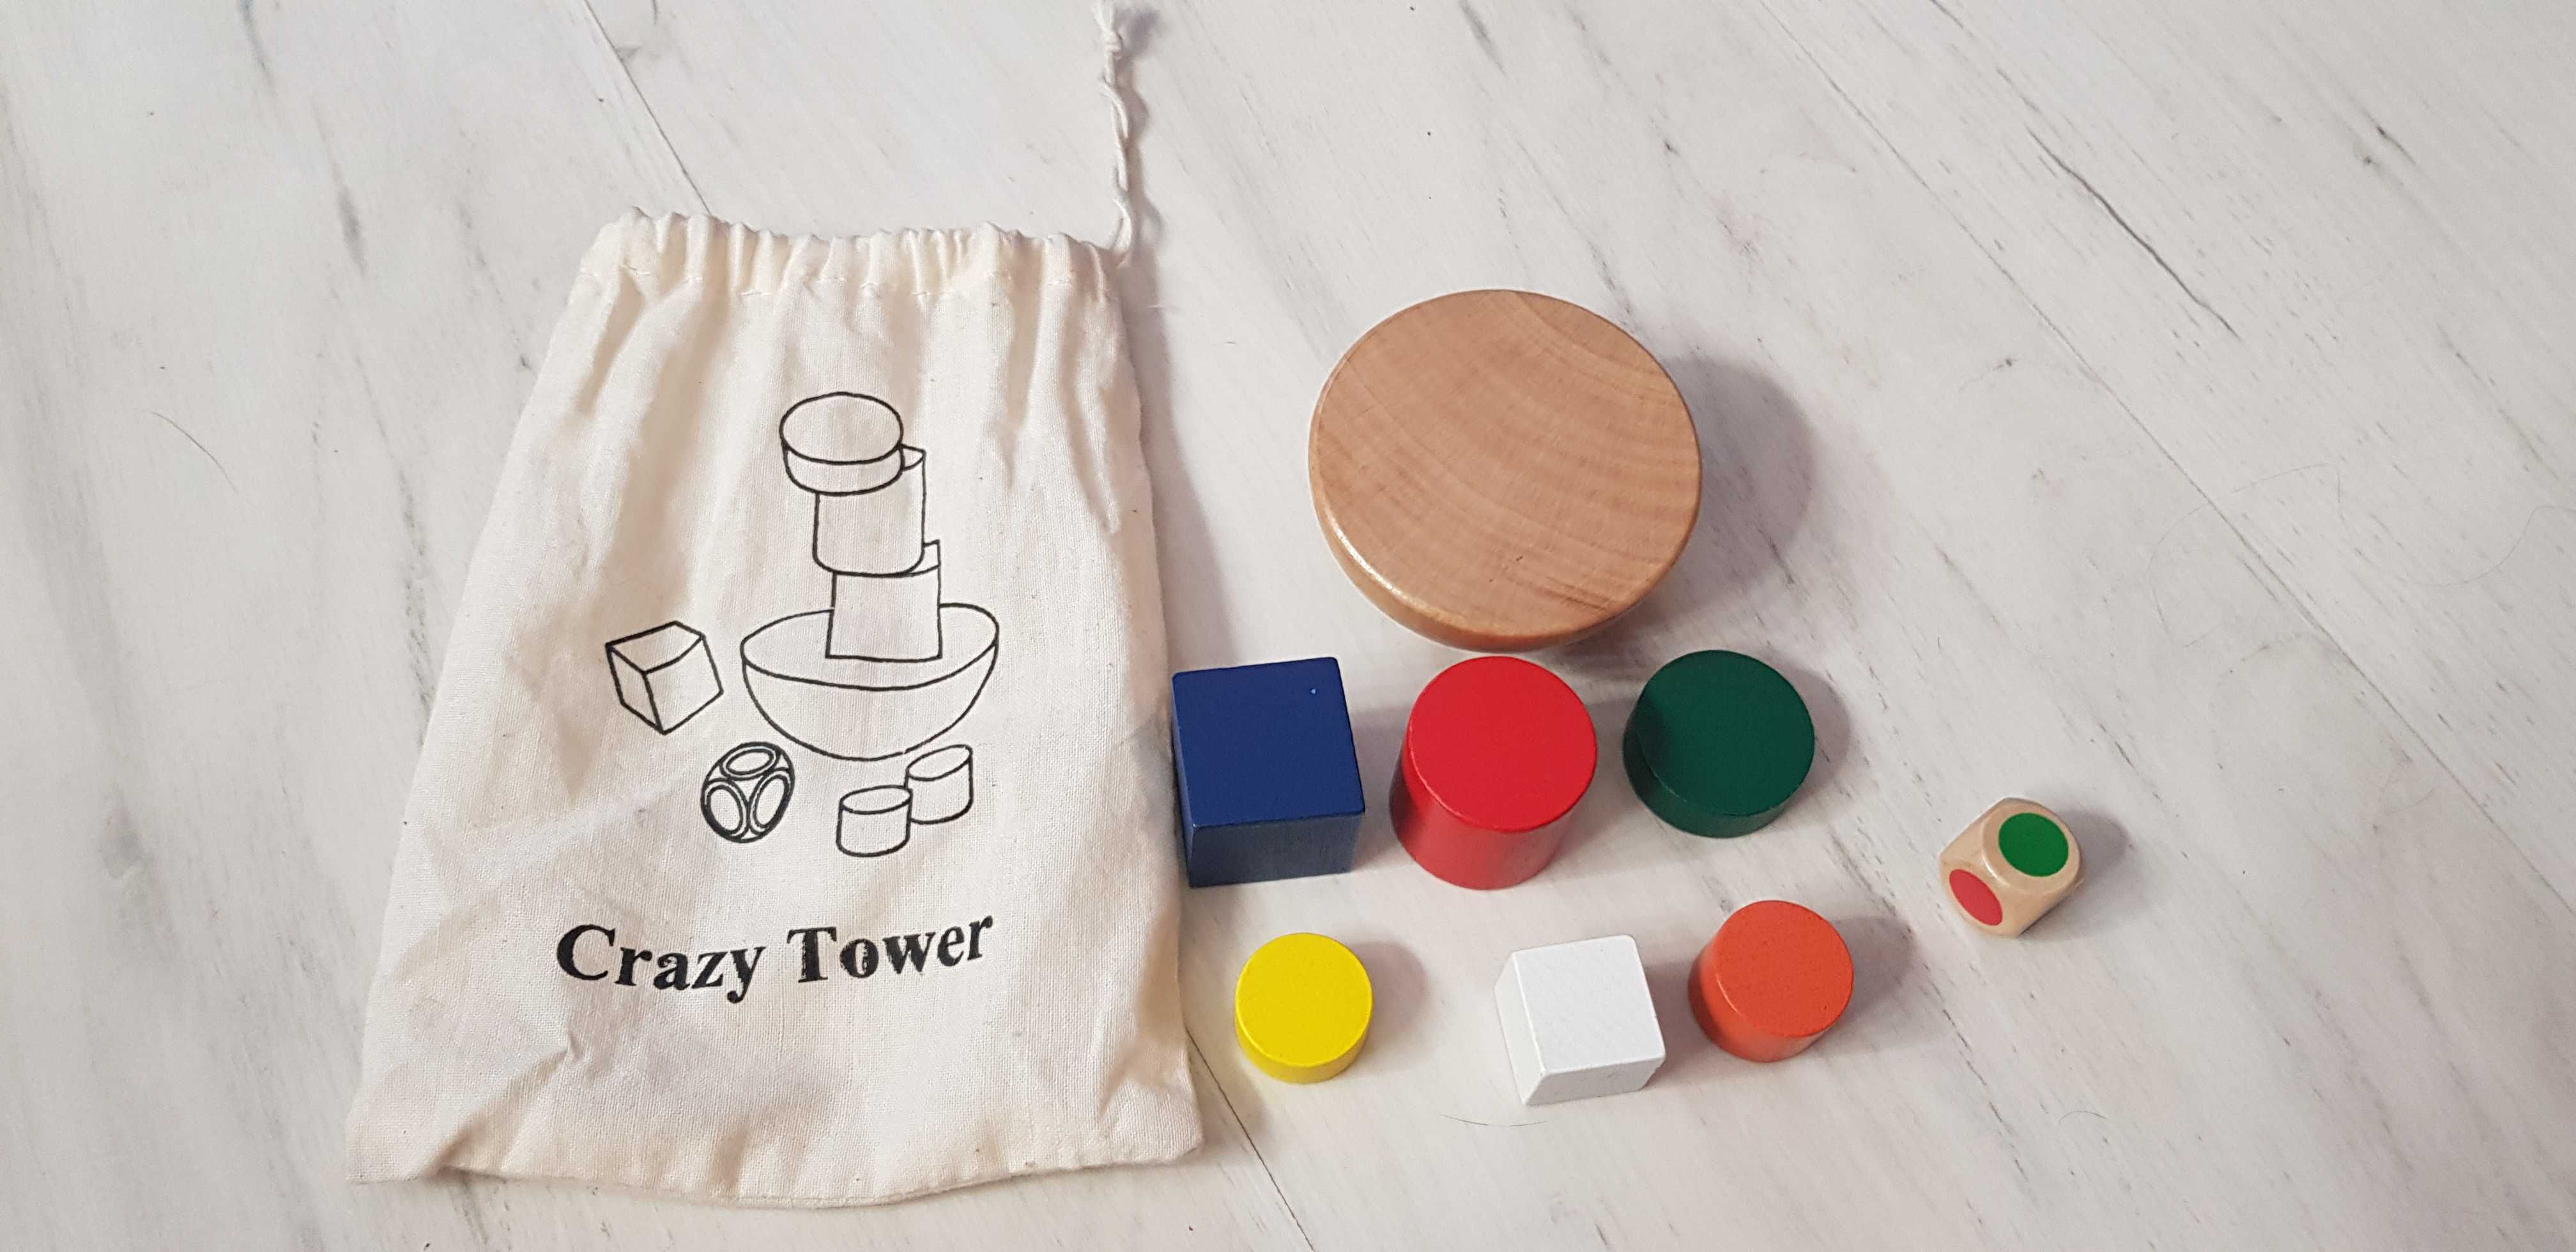 Crazy tower - gra zręcznościowa